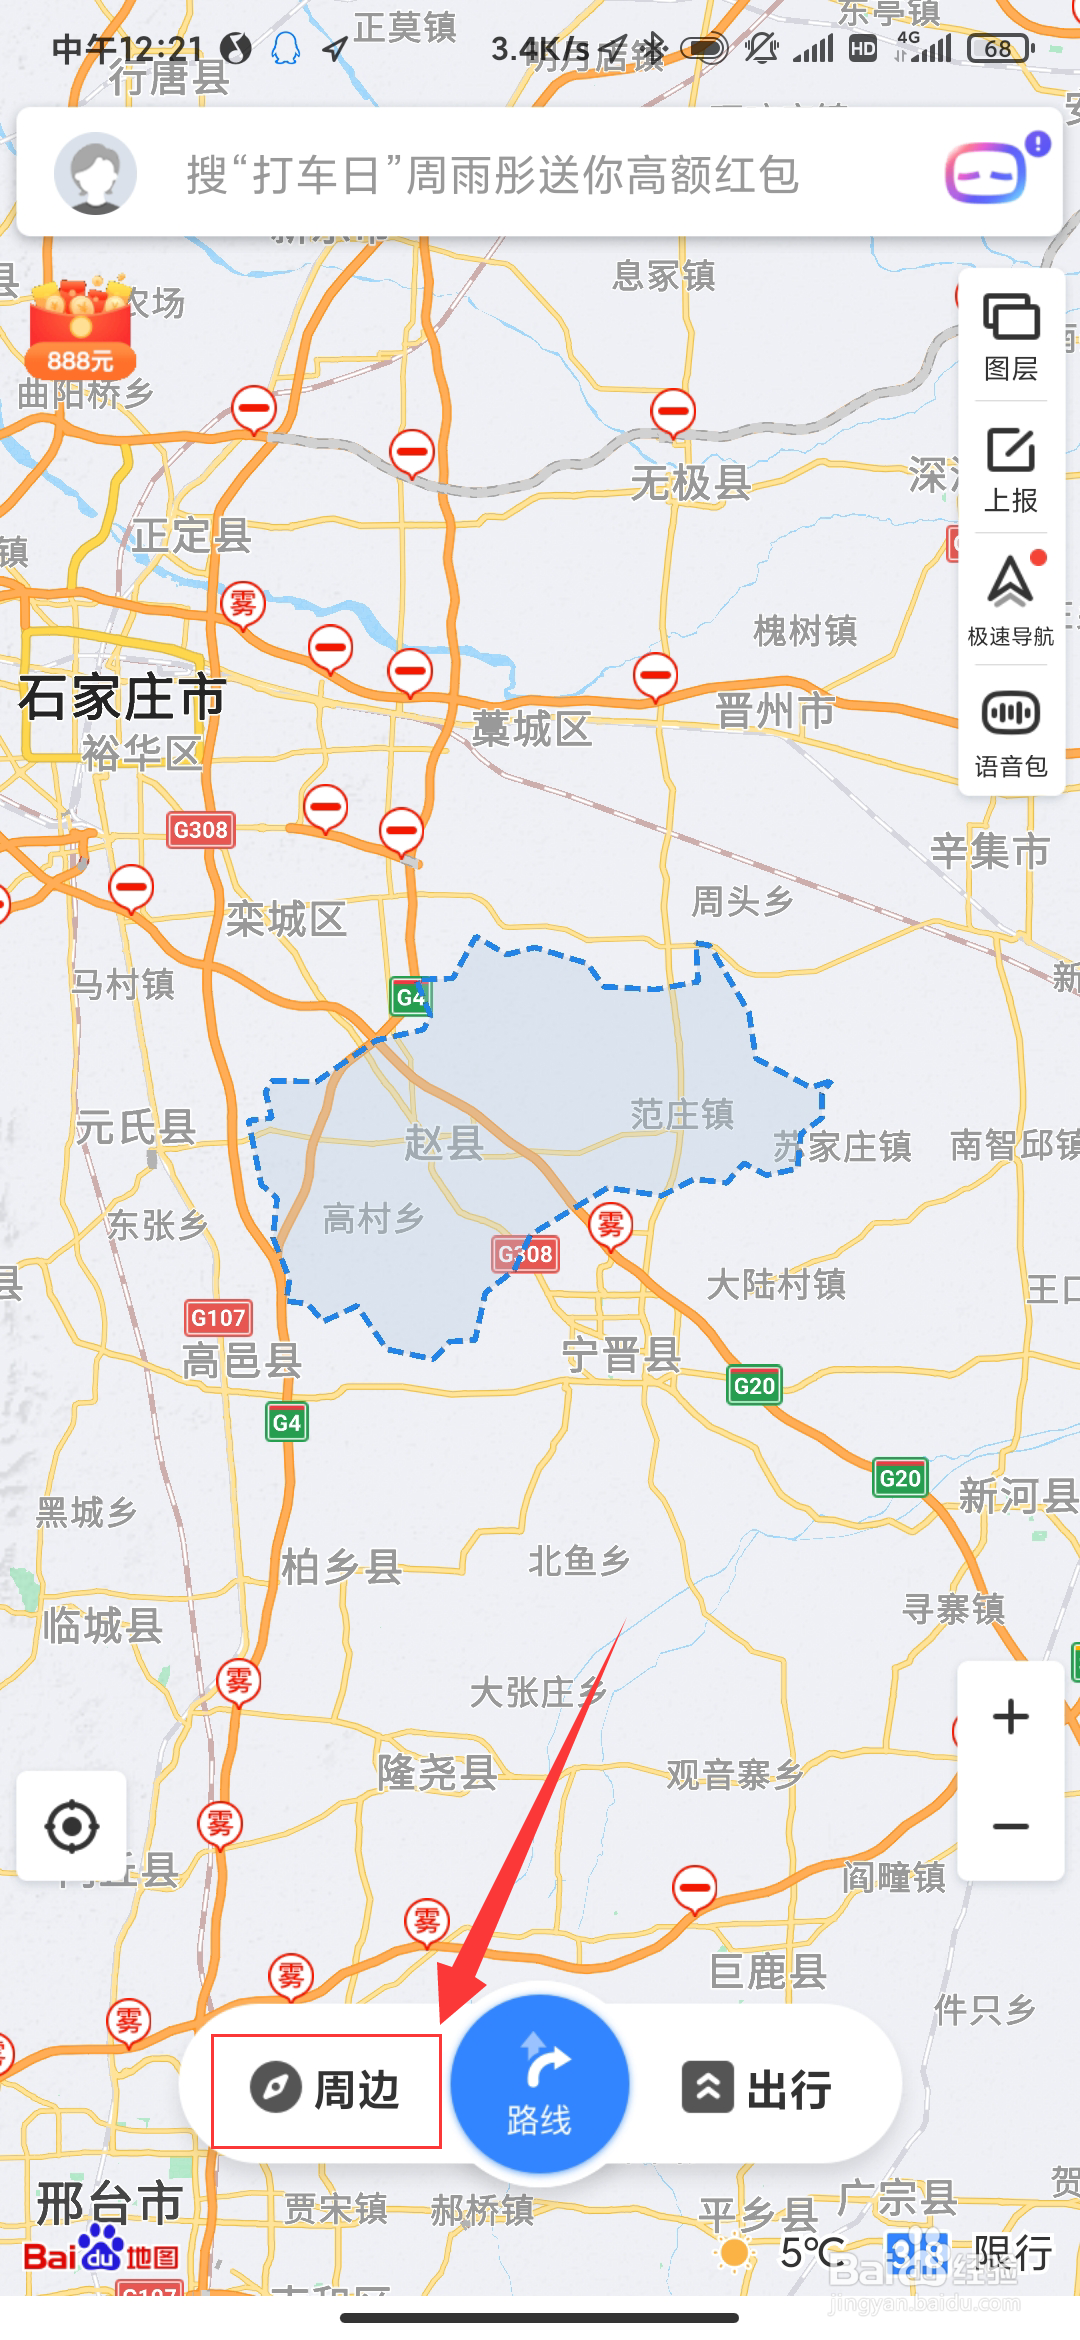 赵县范庄镇地图图片